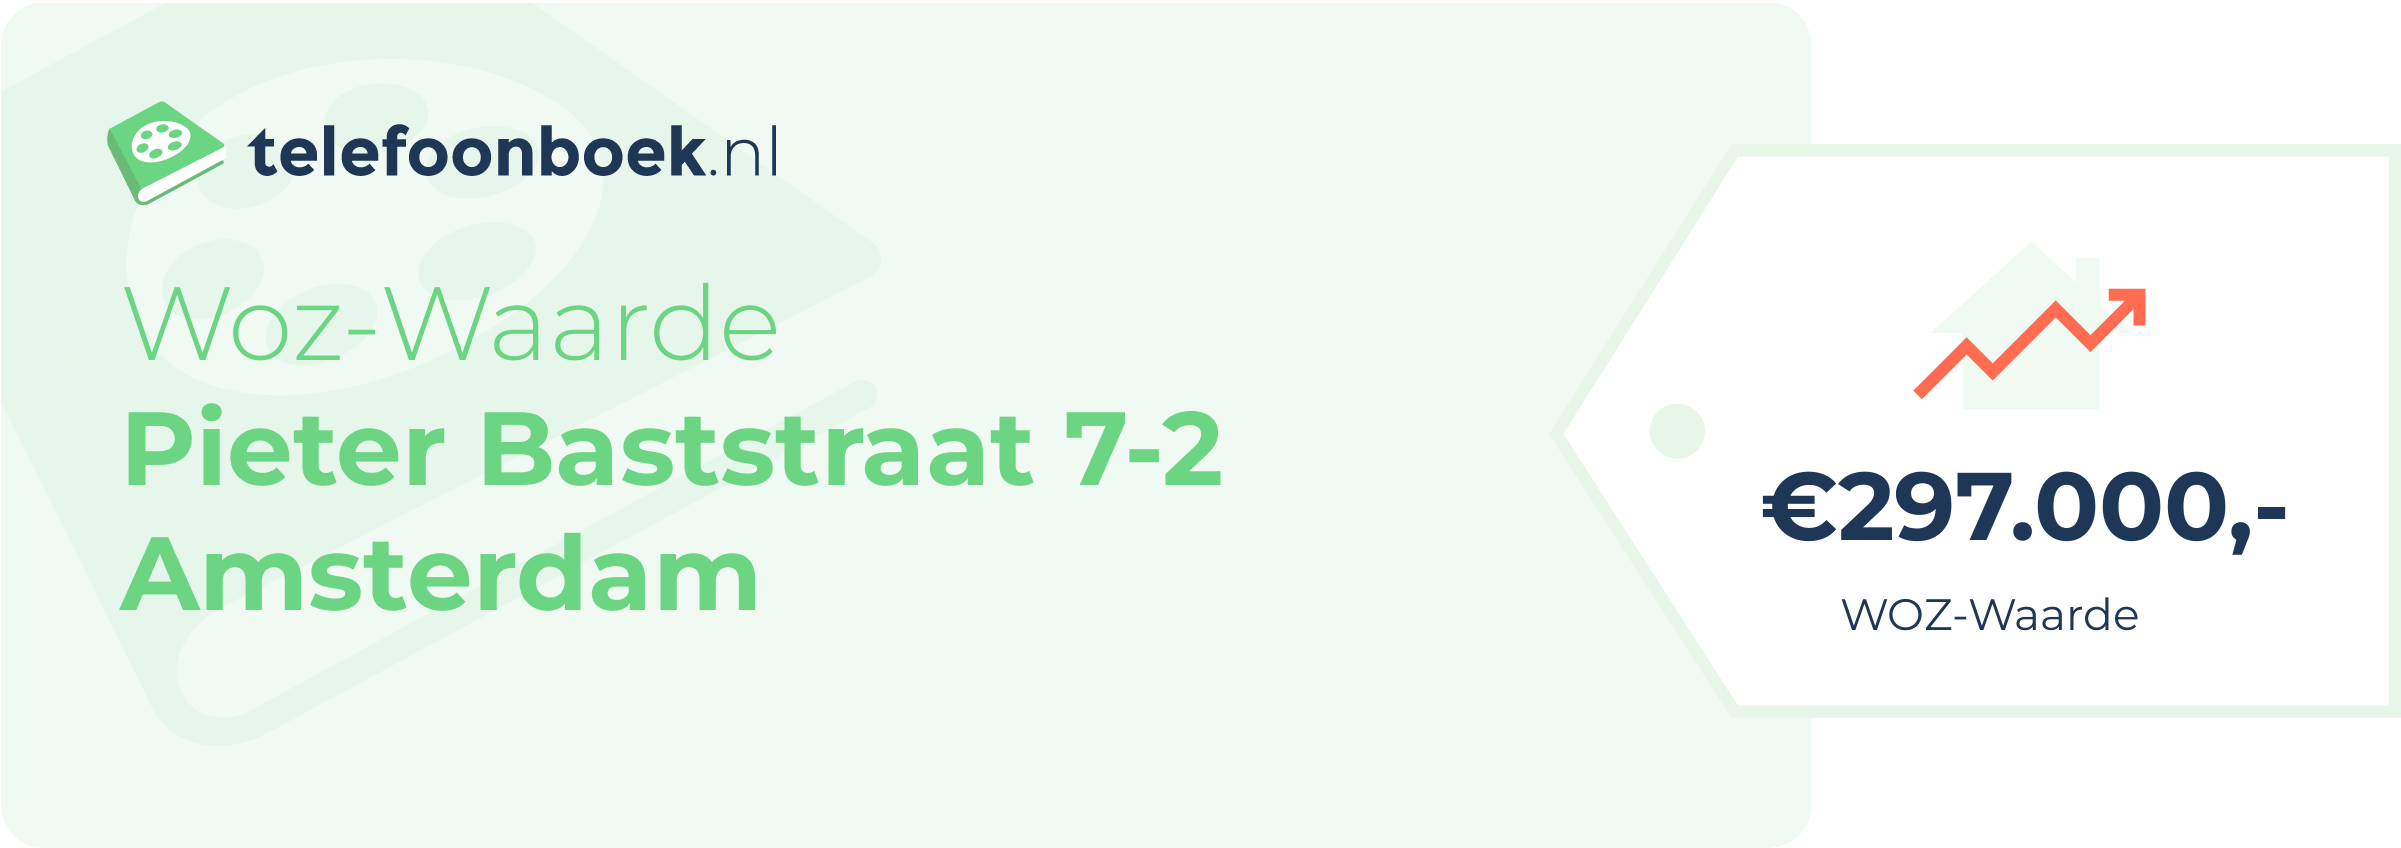 WOZ-waarde Pieter Baststraat 7-2 Amsterdam